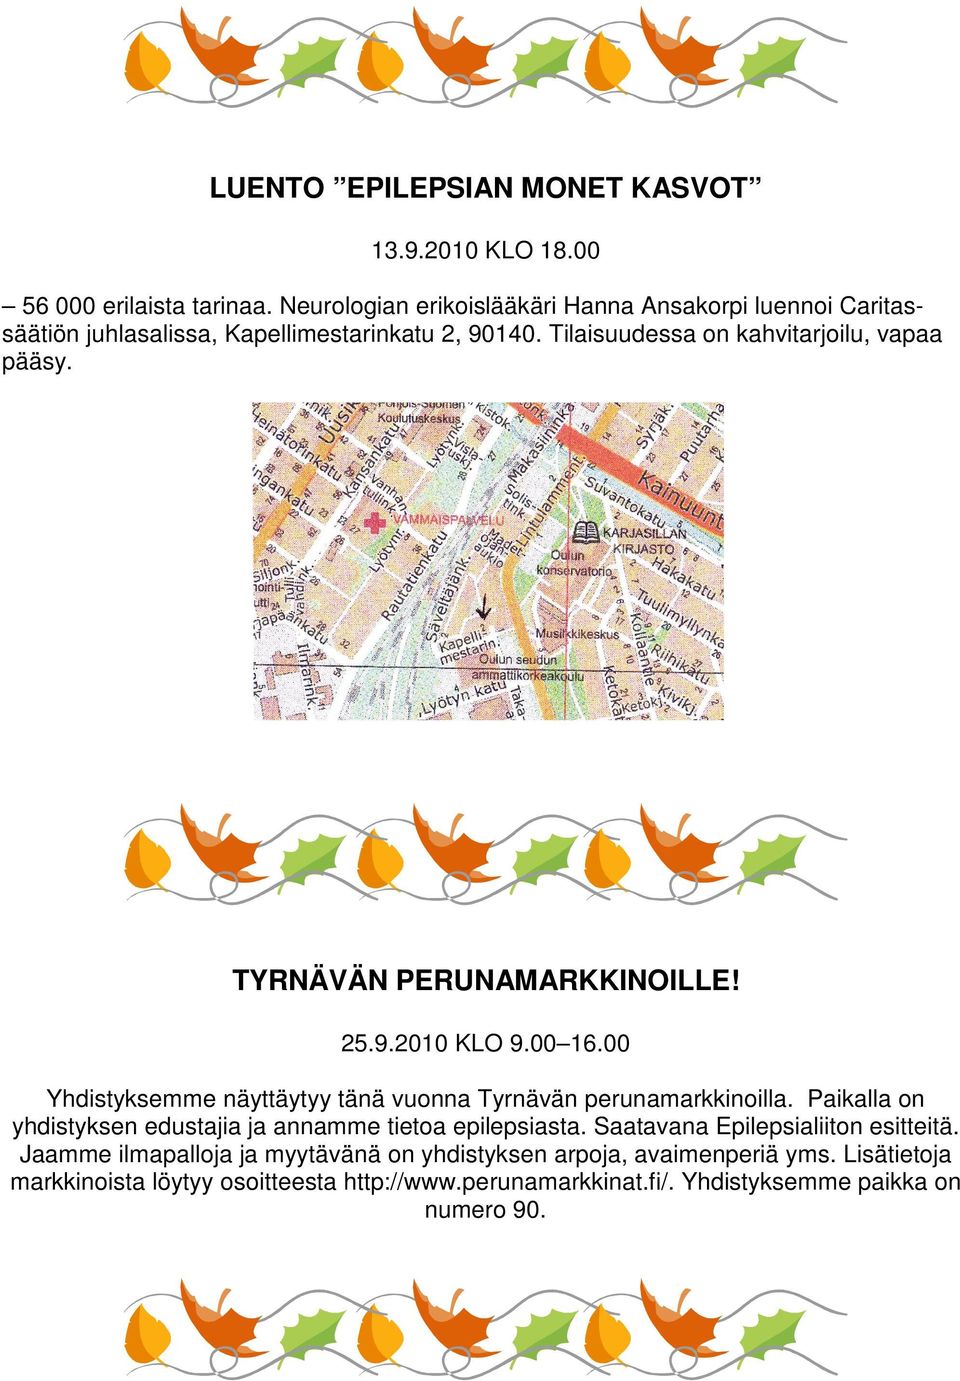 TYRNÄVÄN PERUNAMARKKINOILLE! 25.9.2010 KLO 9.00 16.00 Yhdistyksemme näyttäytyy tänä vuonna Tyrnävän perunamarkkinoilla.